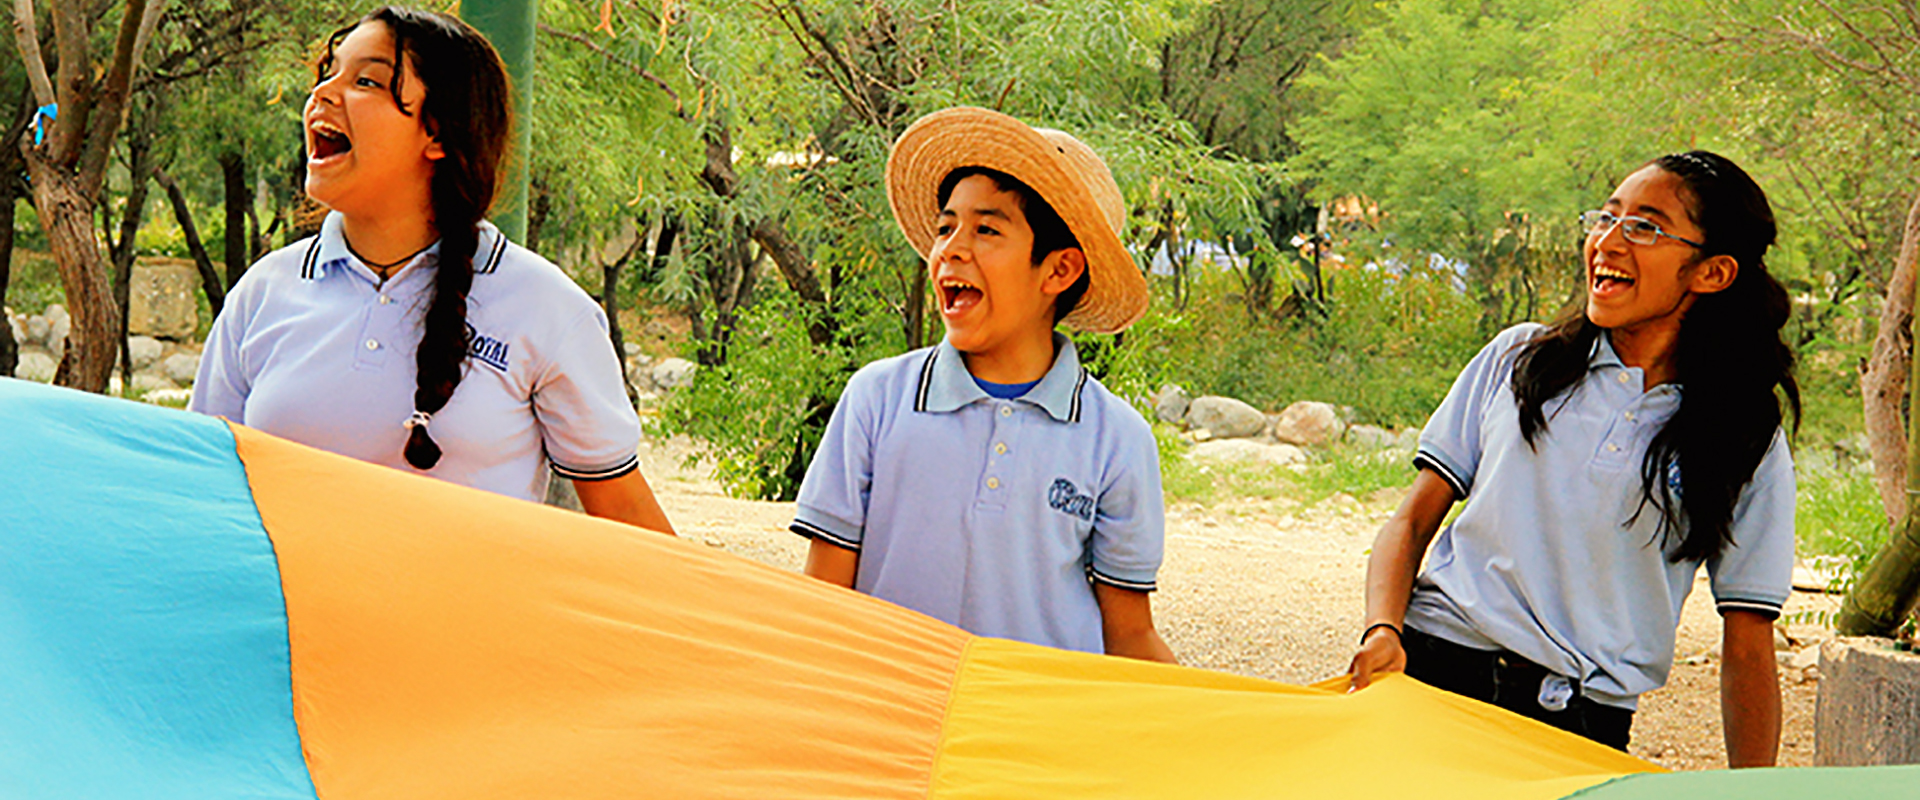 Actividad Educativa para Grupos Escolares, Camino del Agua, en el Museo del Agua, San Gabriel Chilac